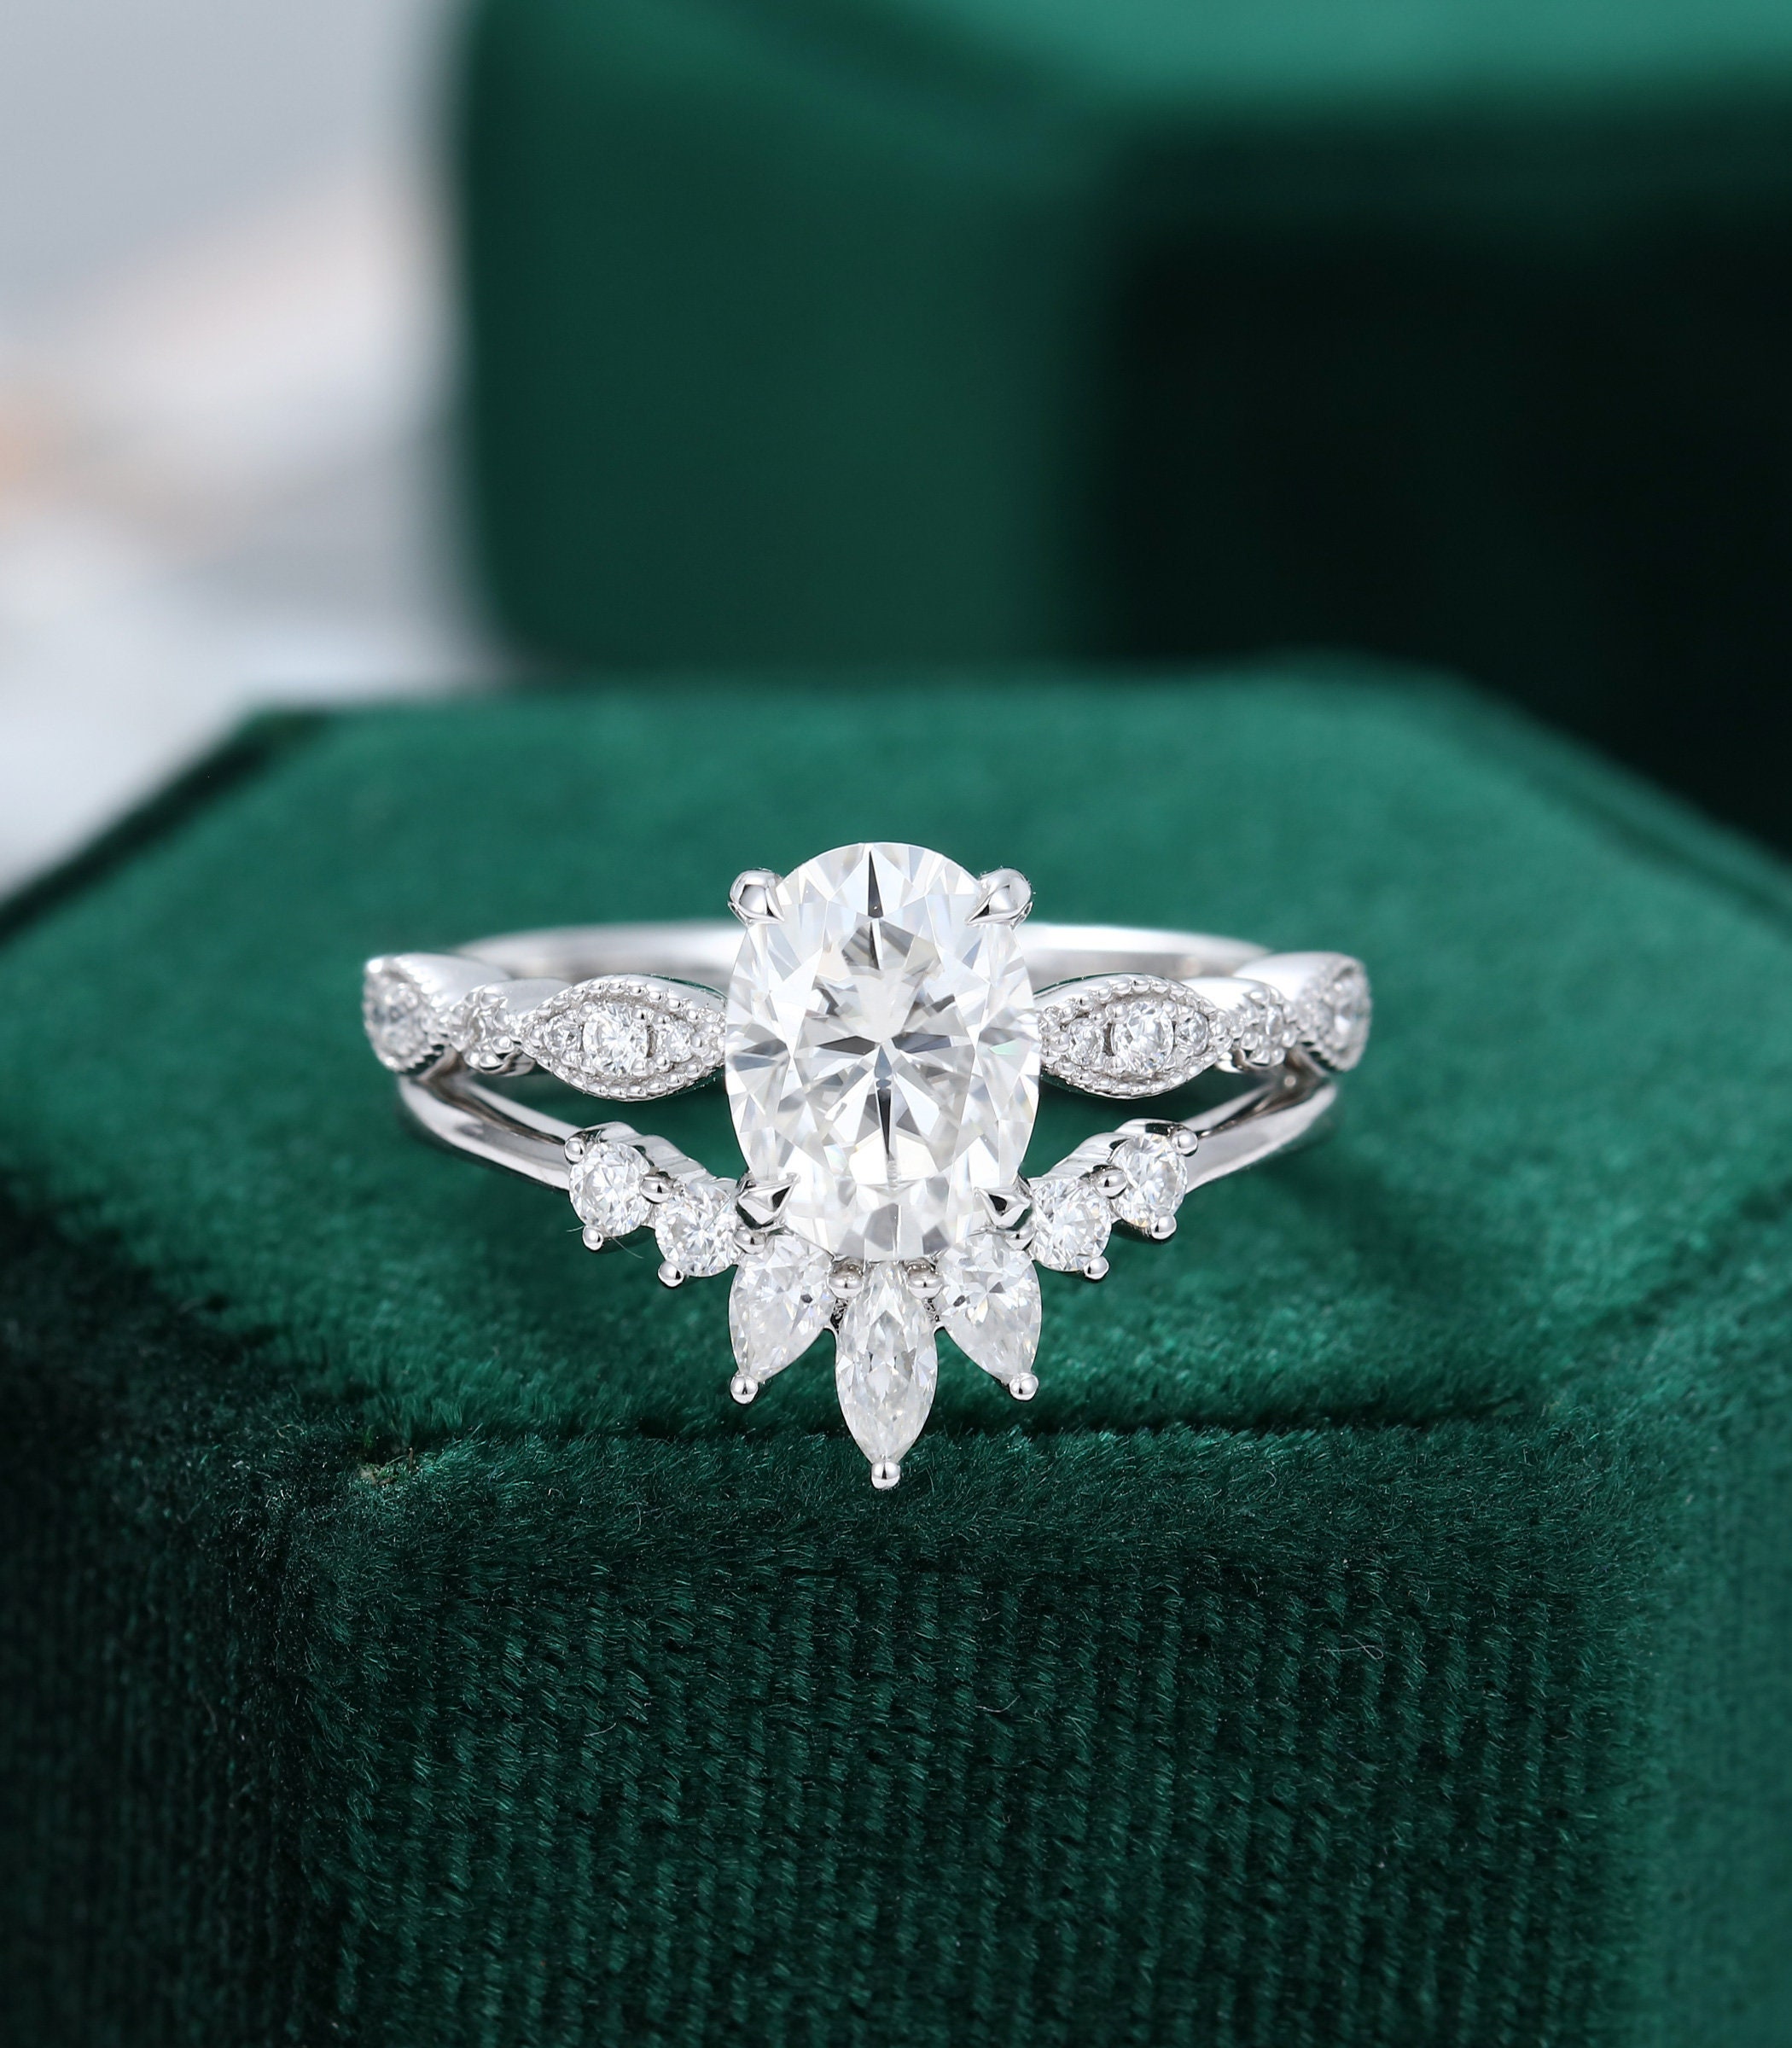 Oval Moissanite engagement ring set white gold diamond ring | Etsy